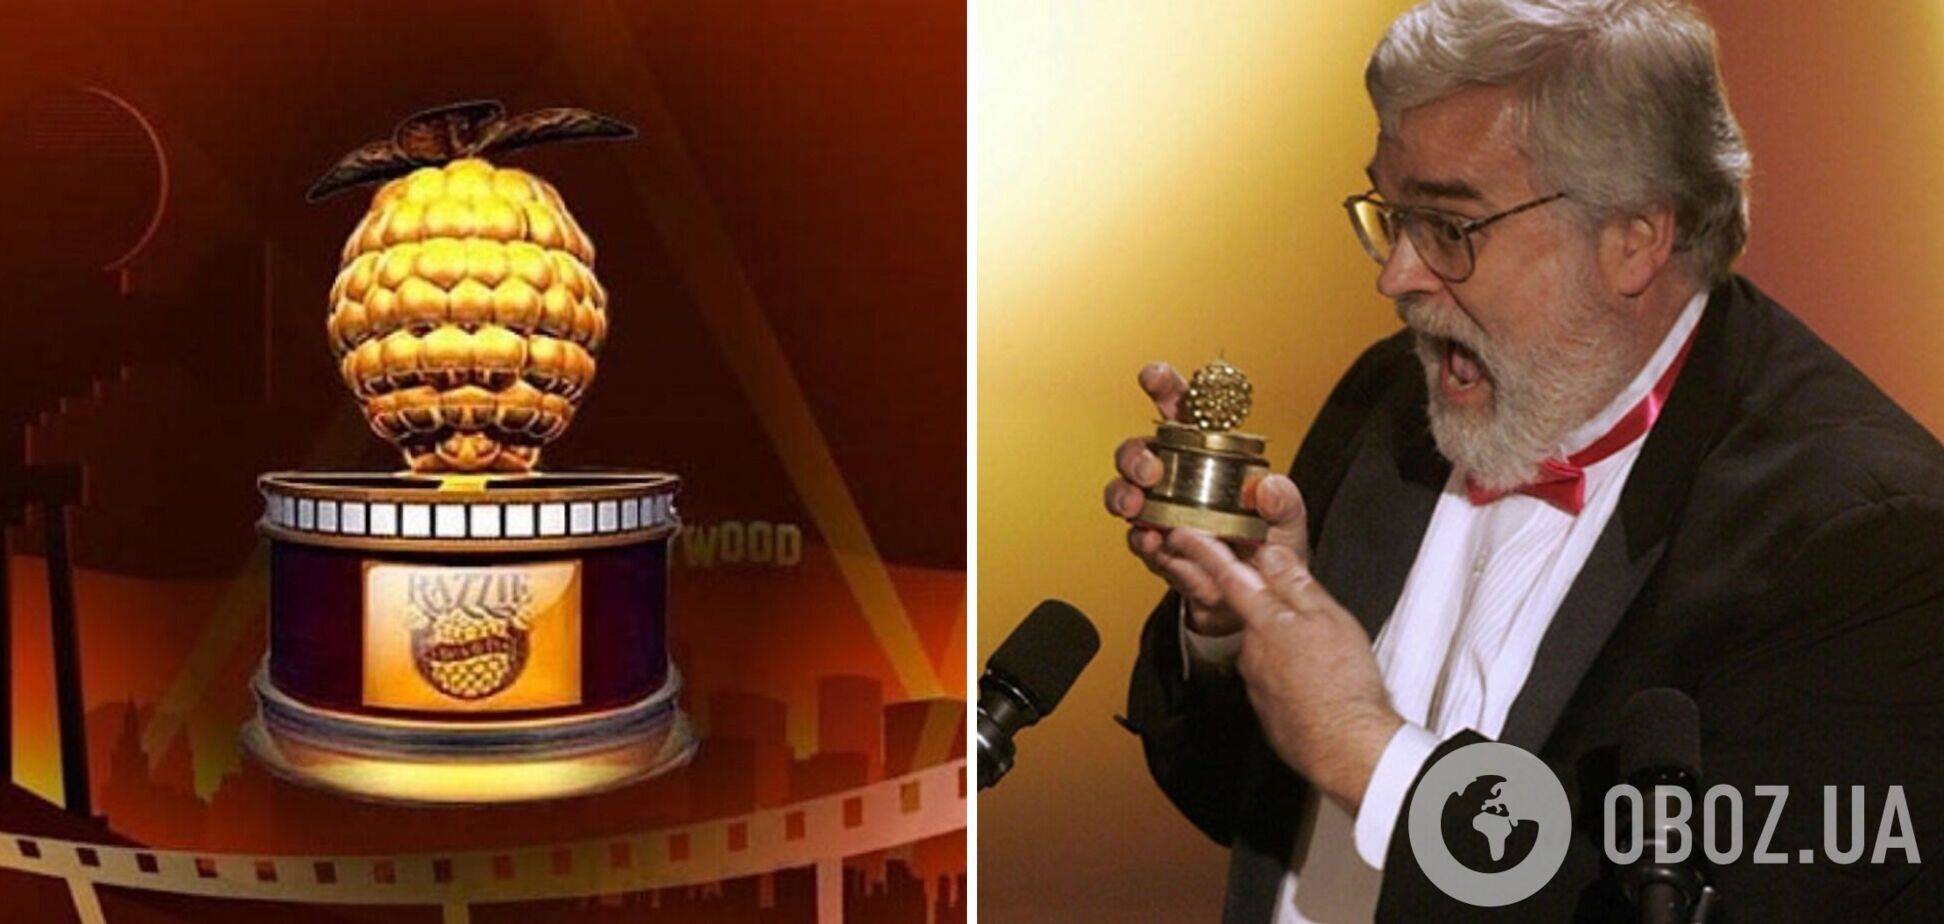 'Анти-Оскар': названы номинанты на звание посмешища в киноиндустрии, которые могут получить 'Золотую малину'